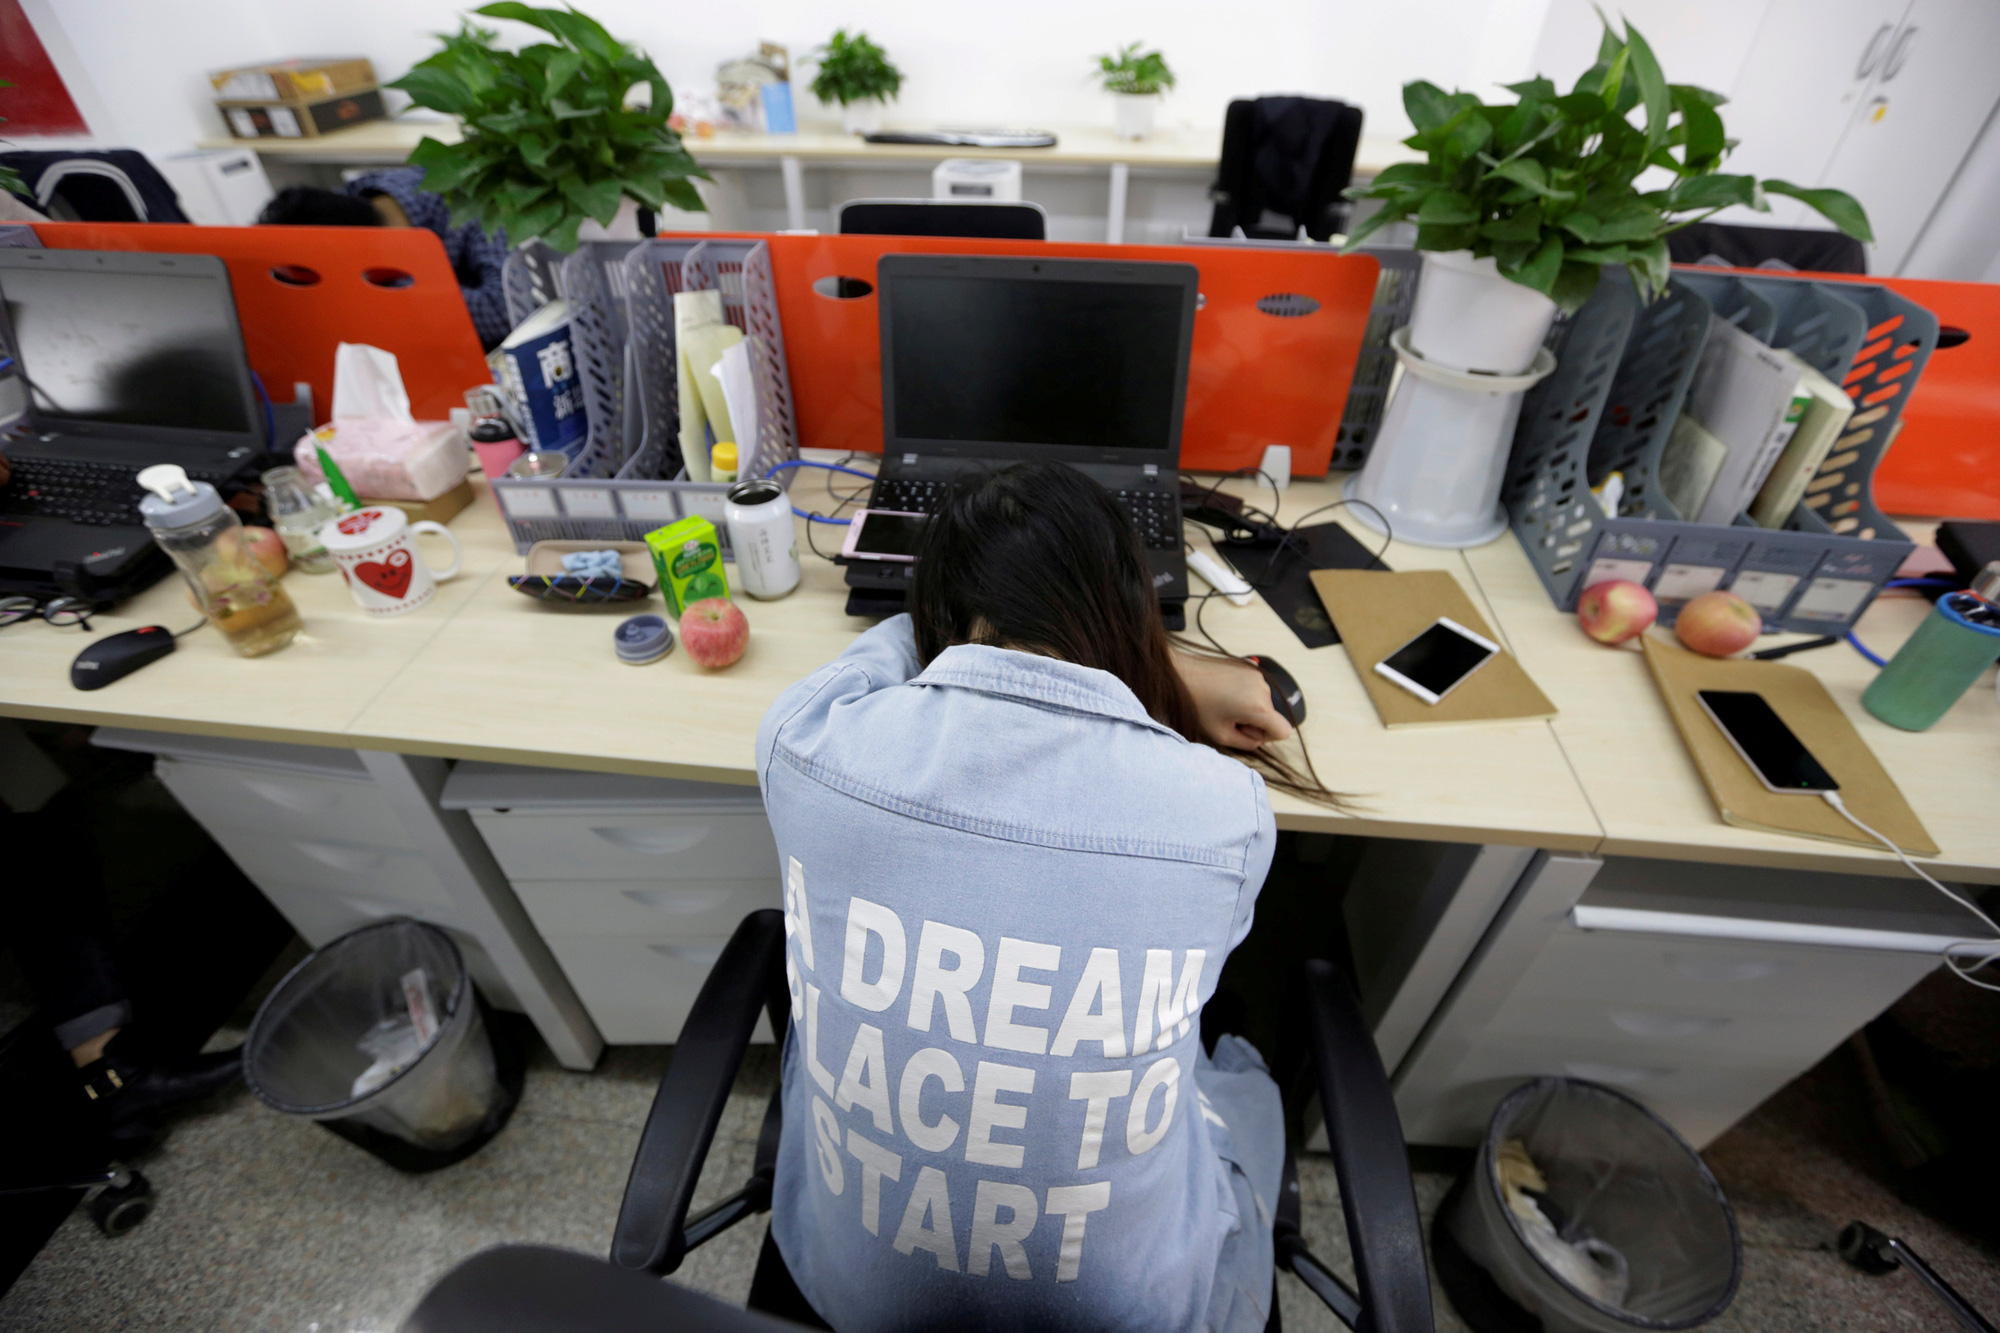 Được trả lương đến gần 2 tỷ đồng/năm nhưng nhân viên công nghệ Trung Quốc khốn khổ vì áp lực, về nhà lúc 6 giờ tối là 